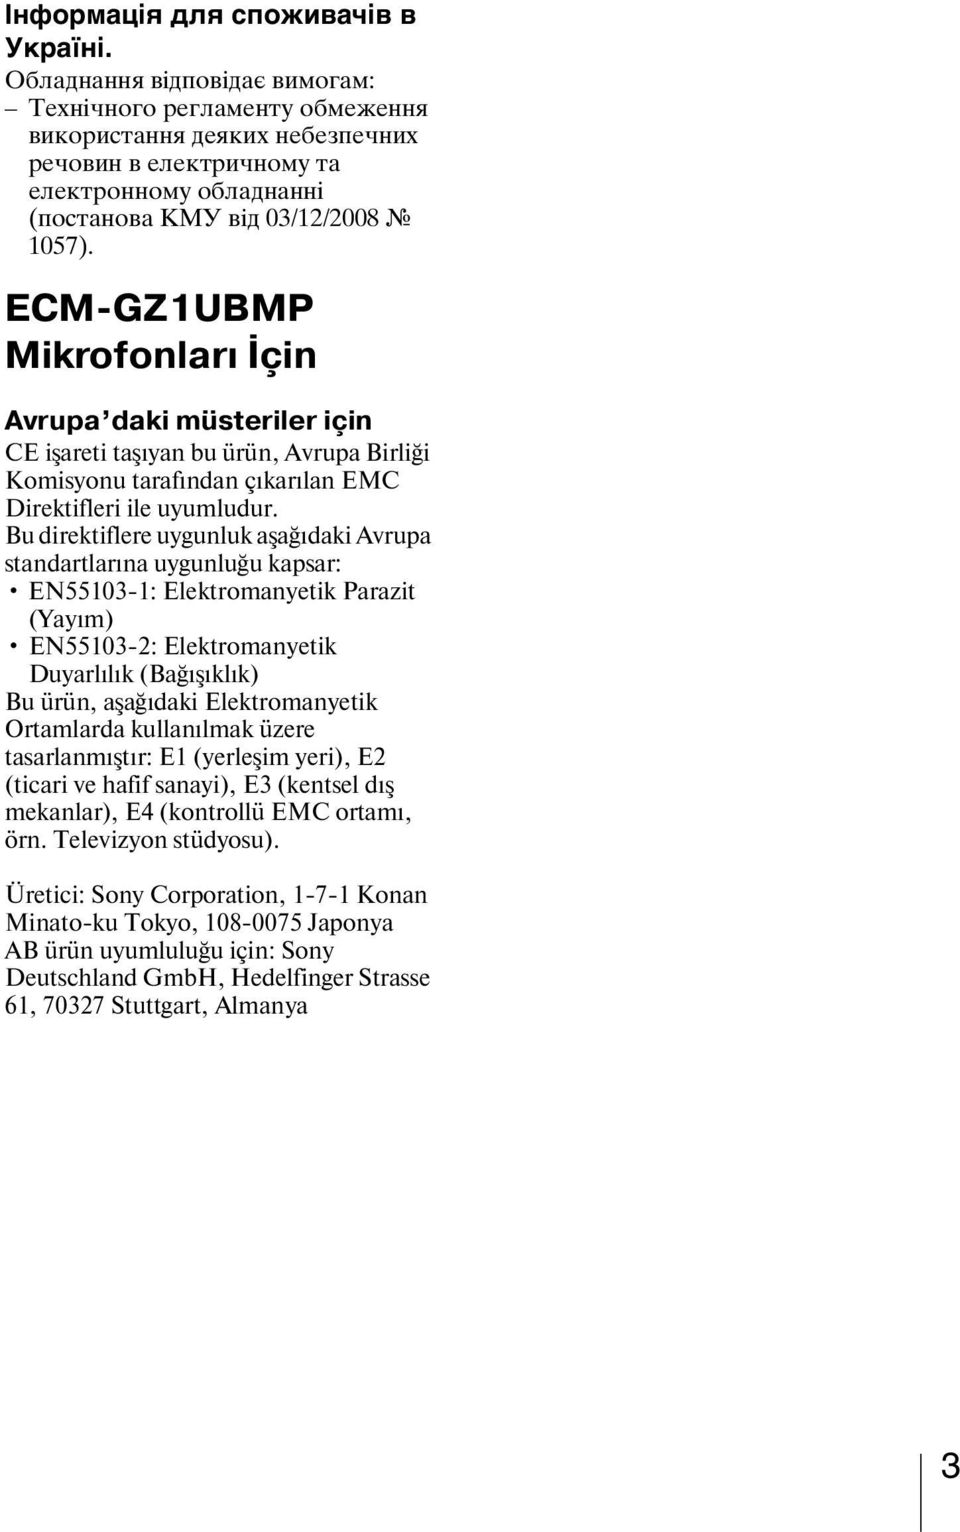 ECM-GZ1UBMP Mikrofonları İçin Avrupa daki müsteriler için CE işareti taşıyan bu ürün, Avrupa Birliği Komisyonu tarafından çıkarılan EMC Direktifleri ile uyumludur.